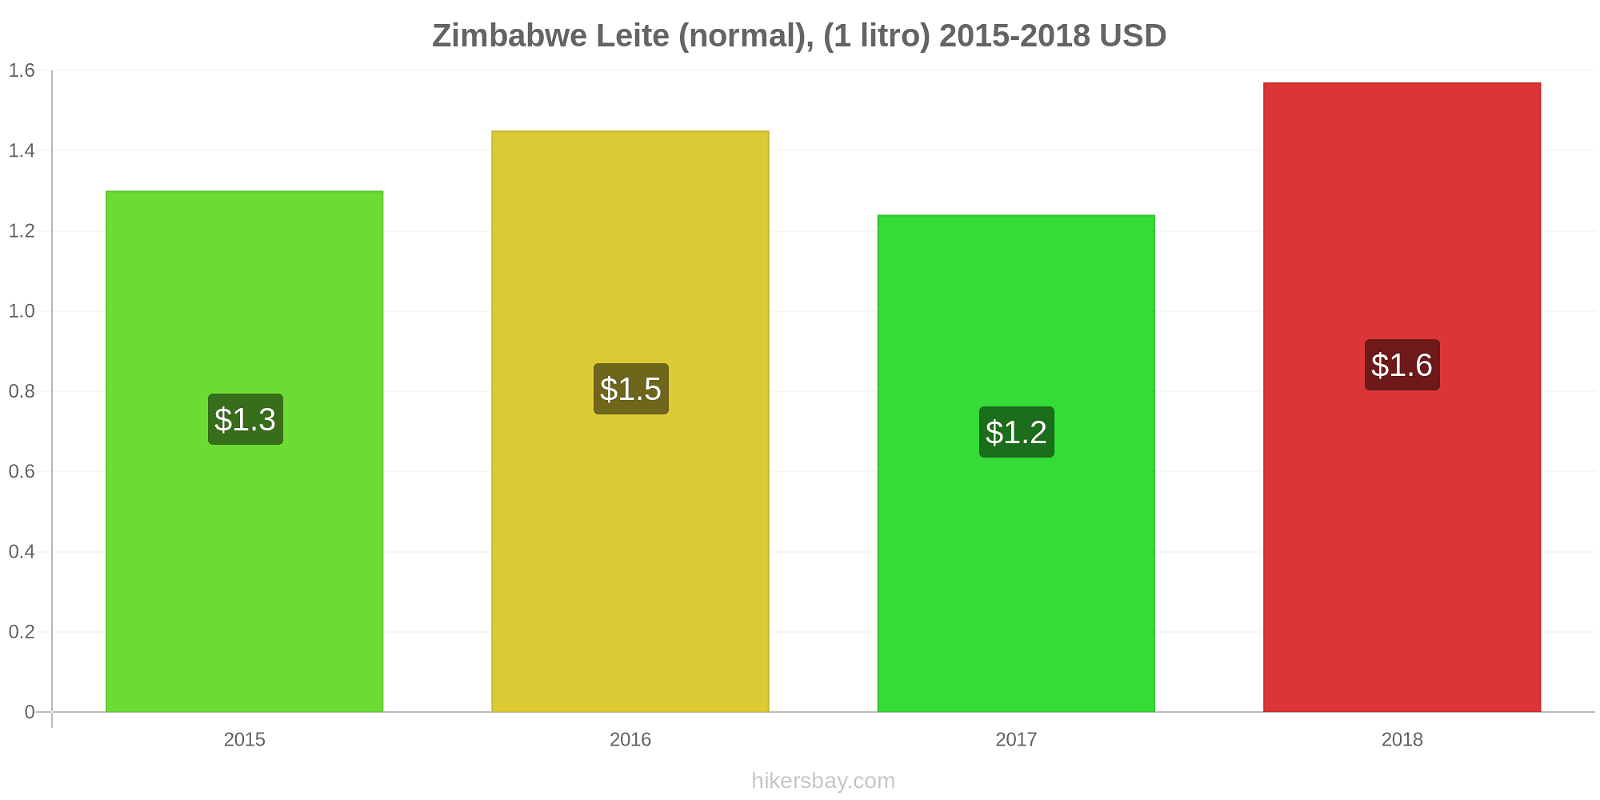 Zimbabwe variação de preço (Regular), leite (1 litro) hikersbay.com